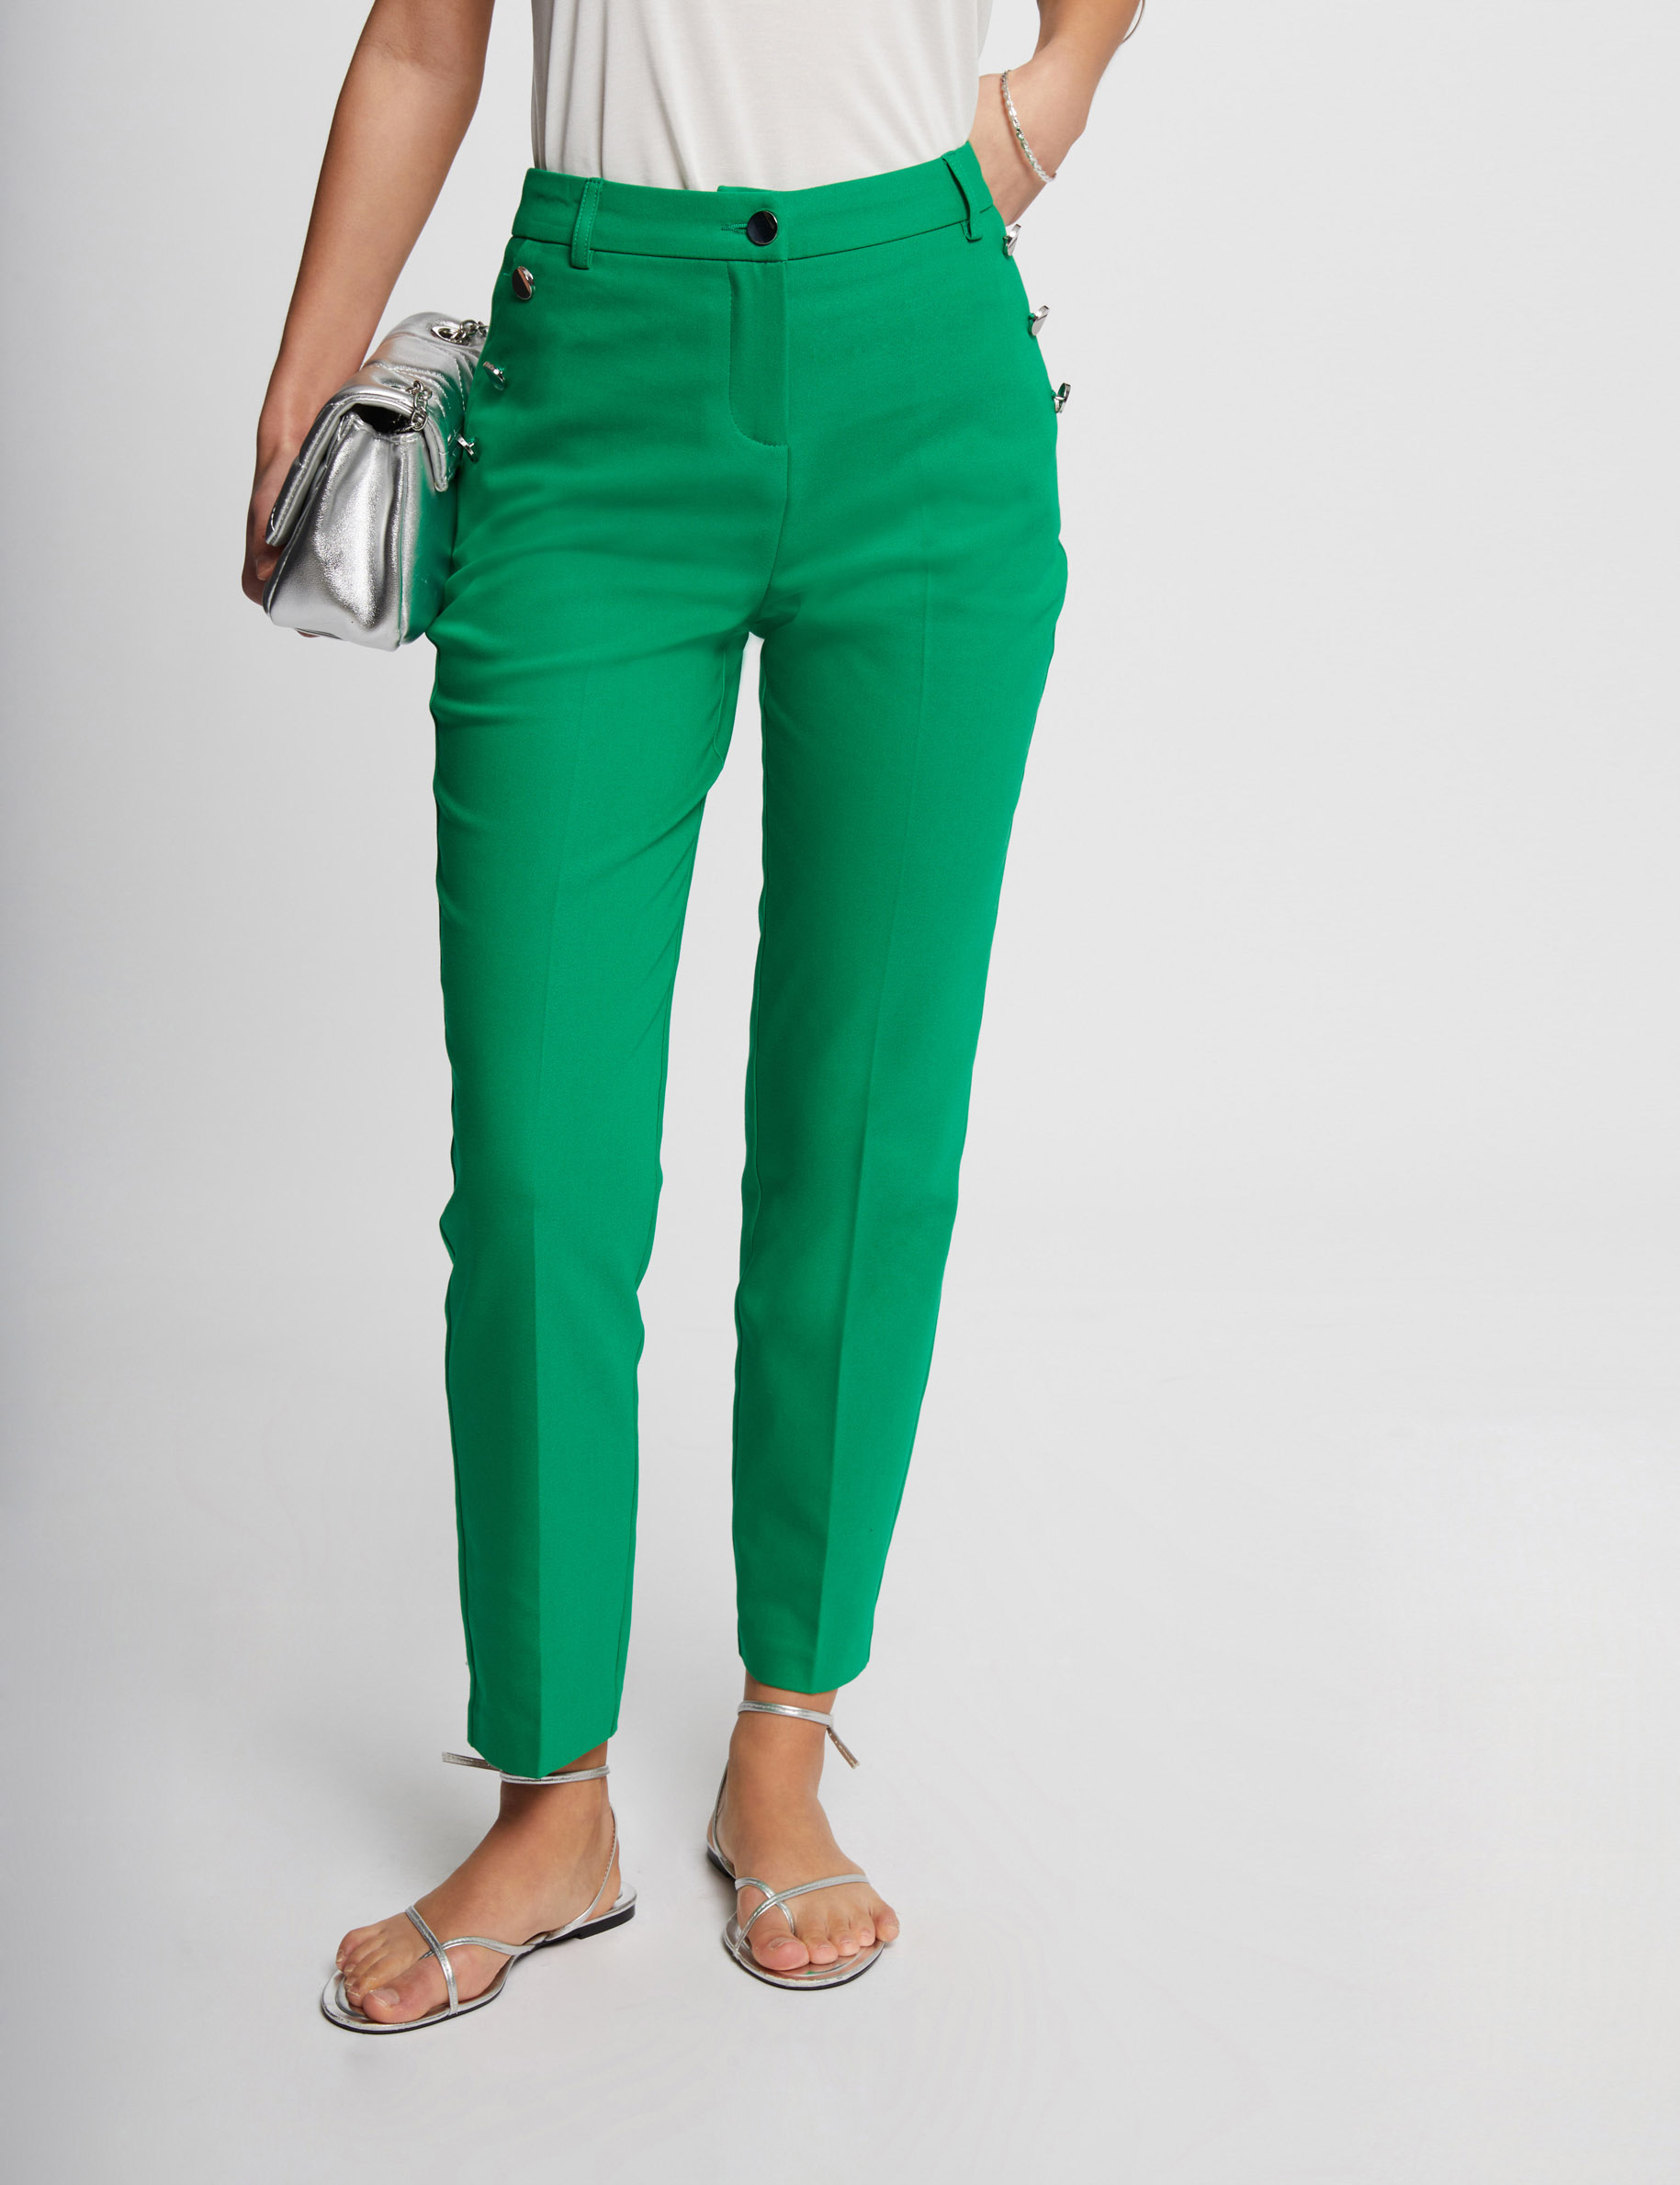 Pantalon ajusté 7/8ème boutons vert femme